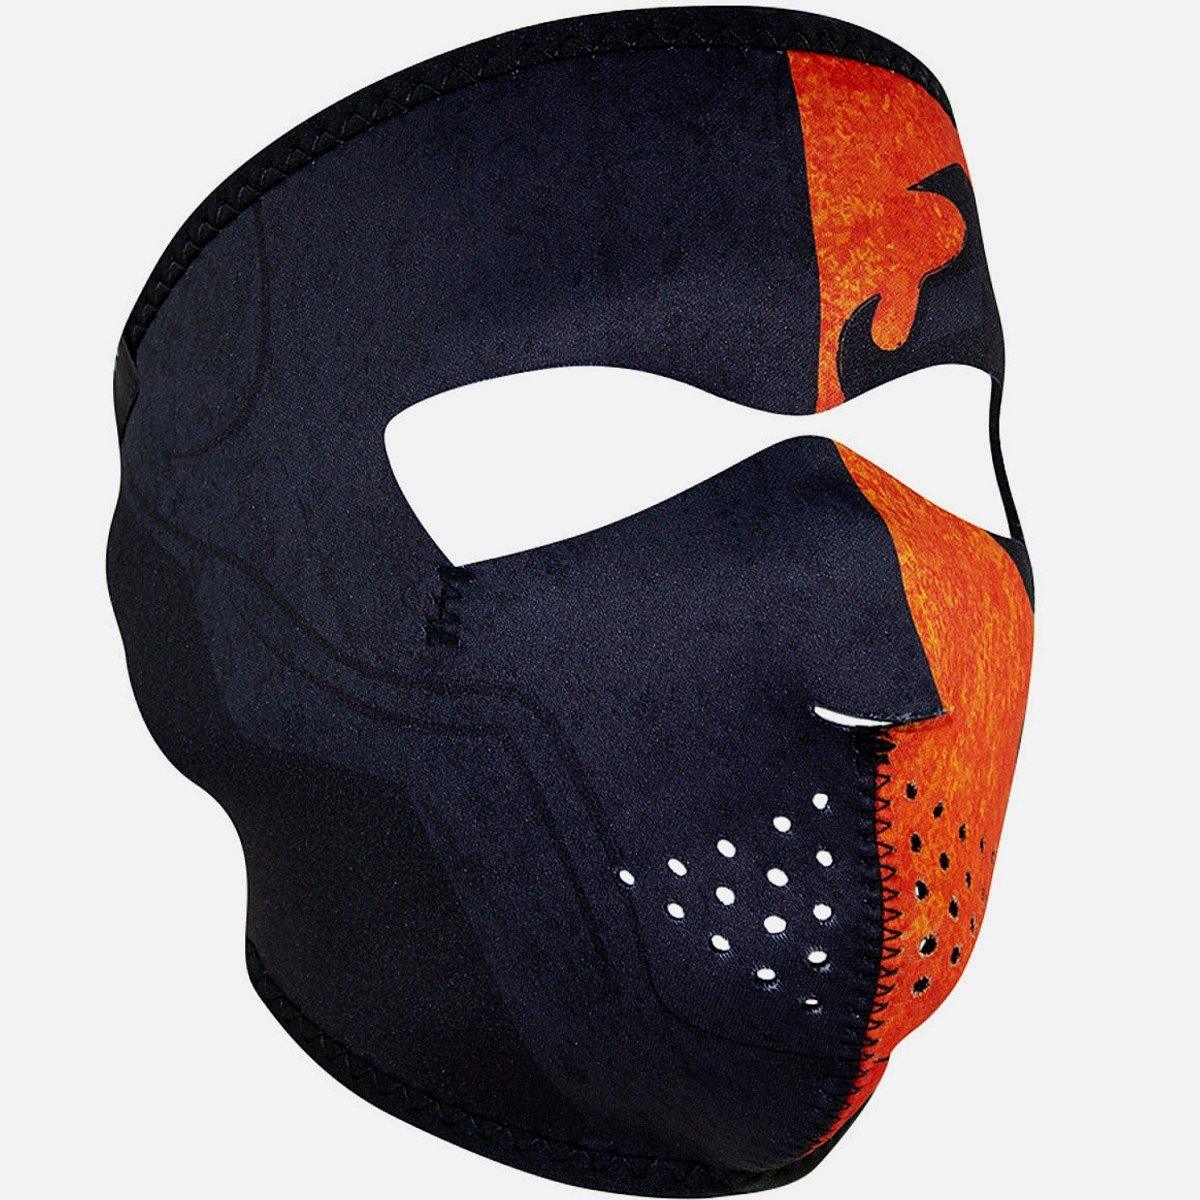 ZANheadgear® Merc Full Face Biker Mask, Neoprene/Polyester, OSFM, Black/Orange - American Legend Rider